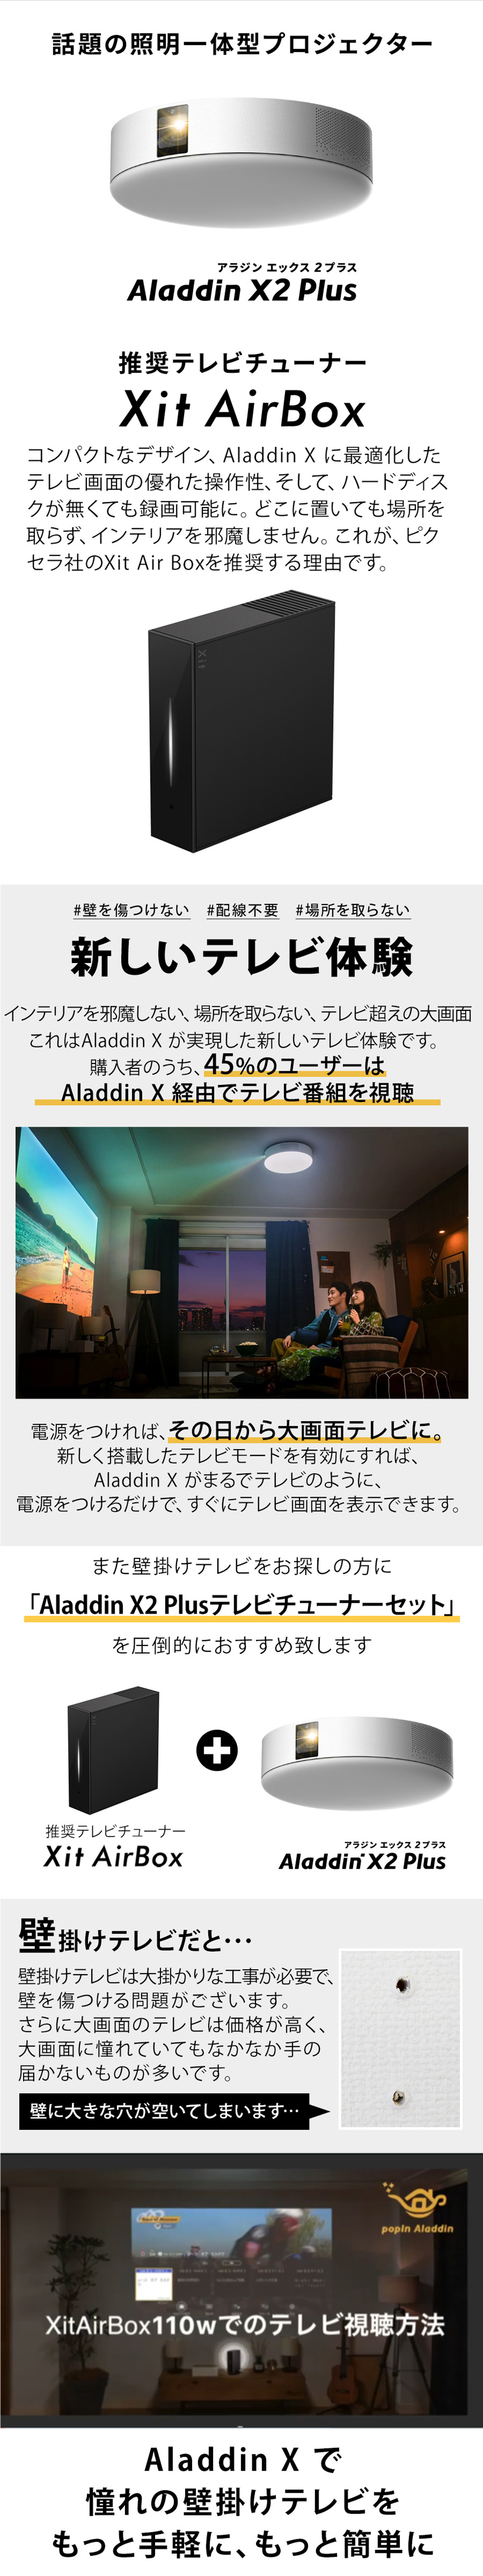 【美品】popIn Aladdin 2 + Xit AirBox セット